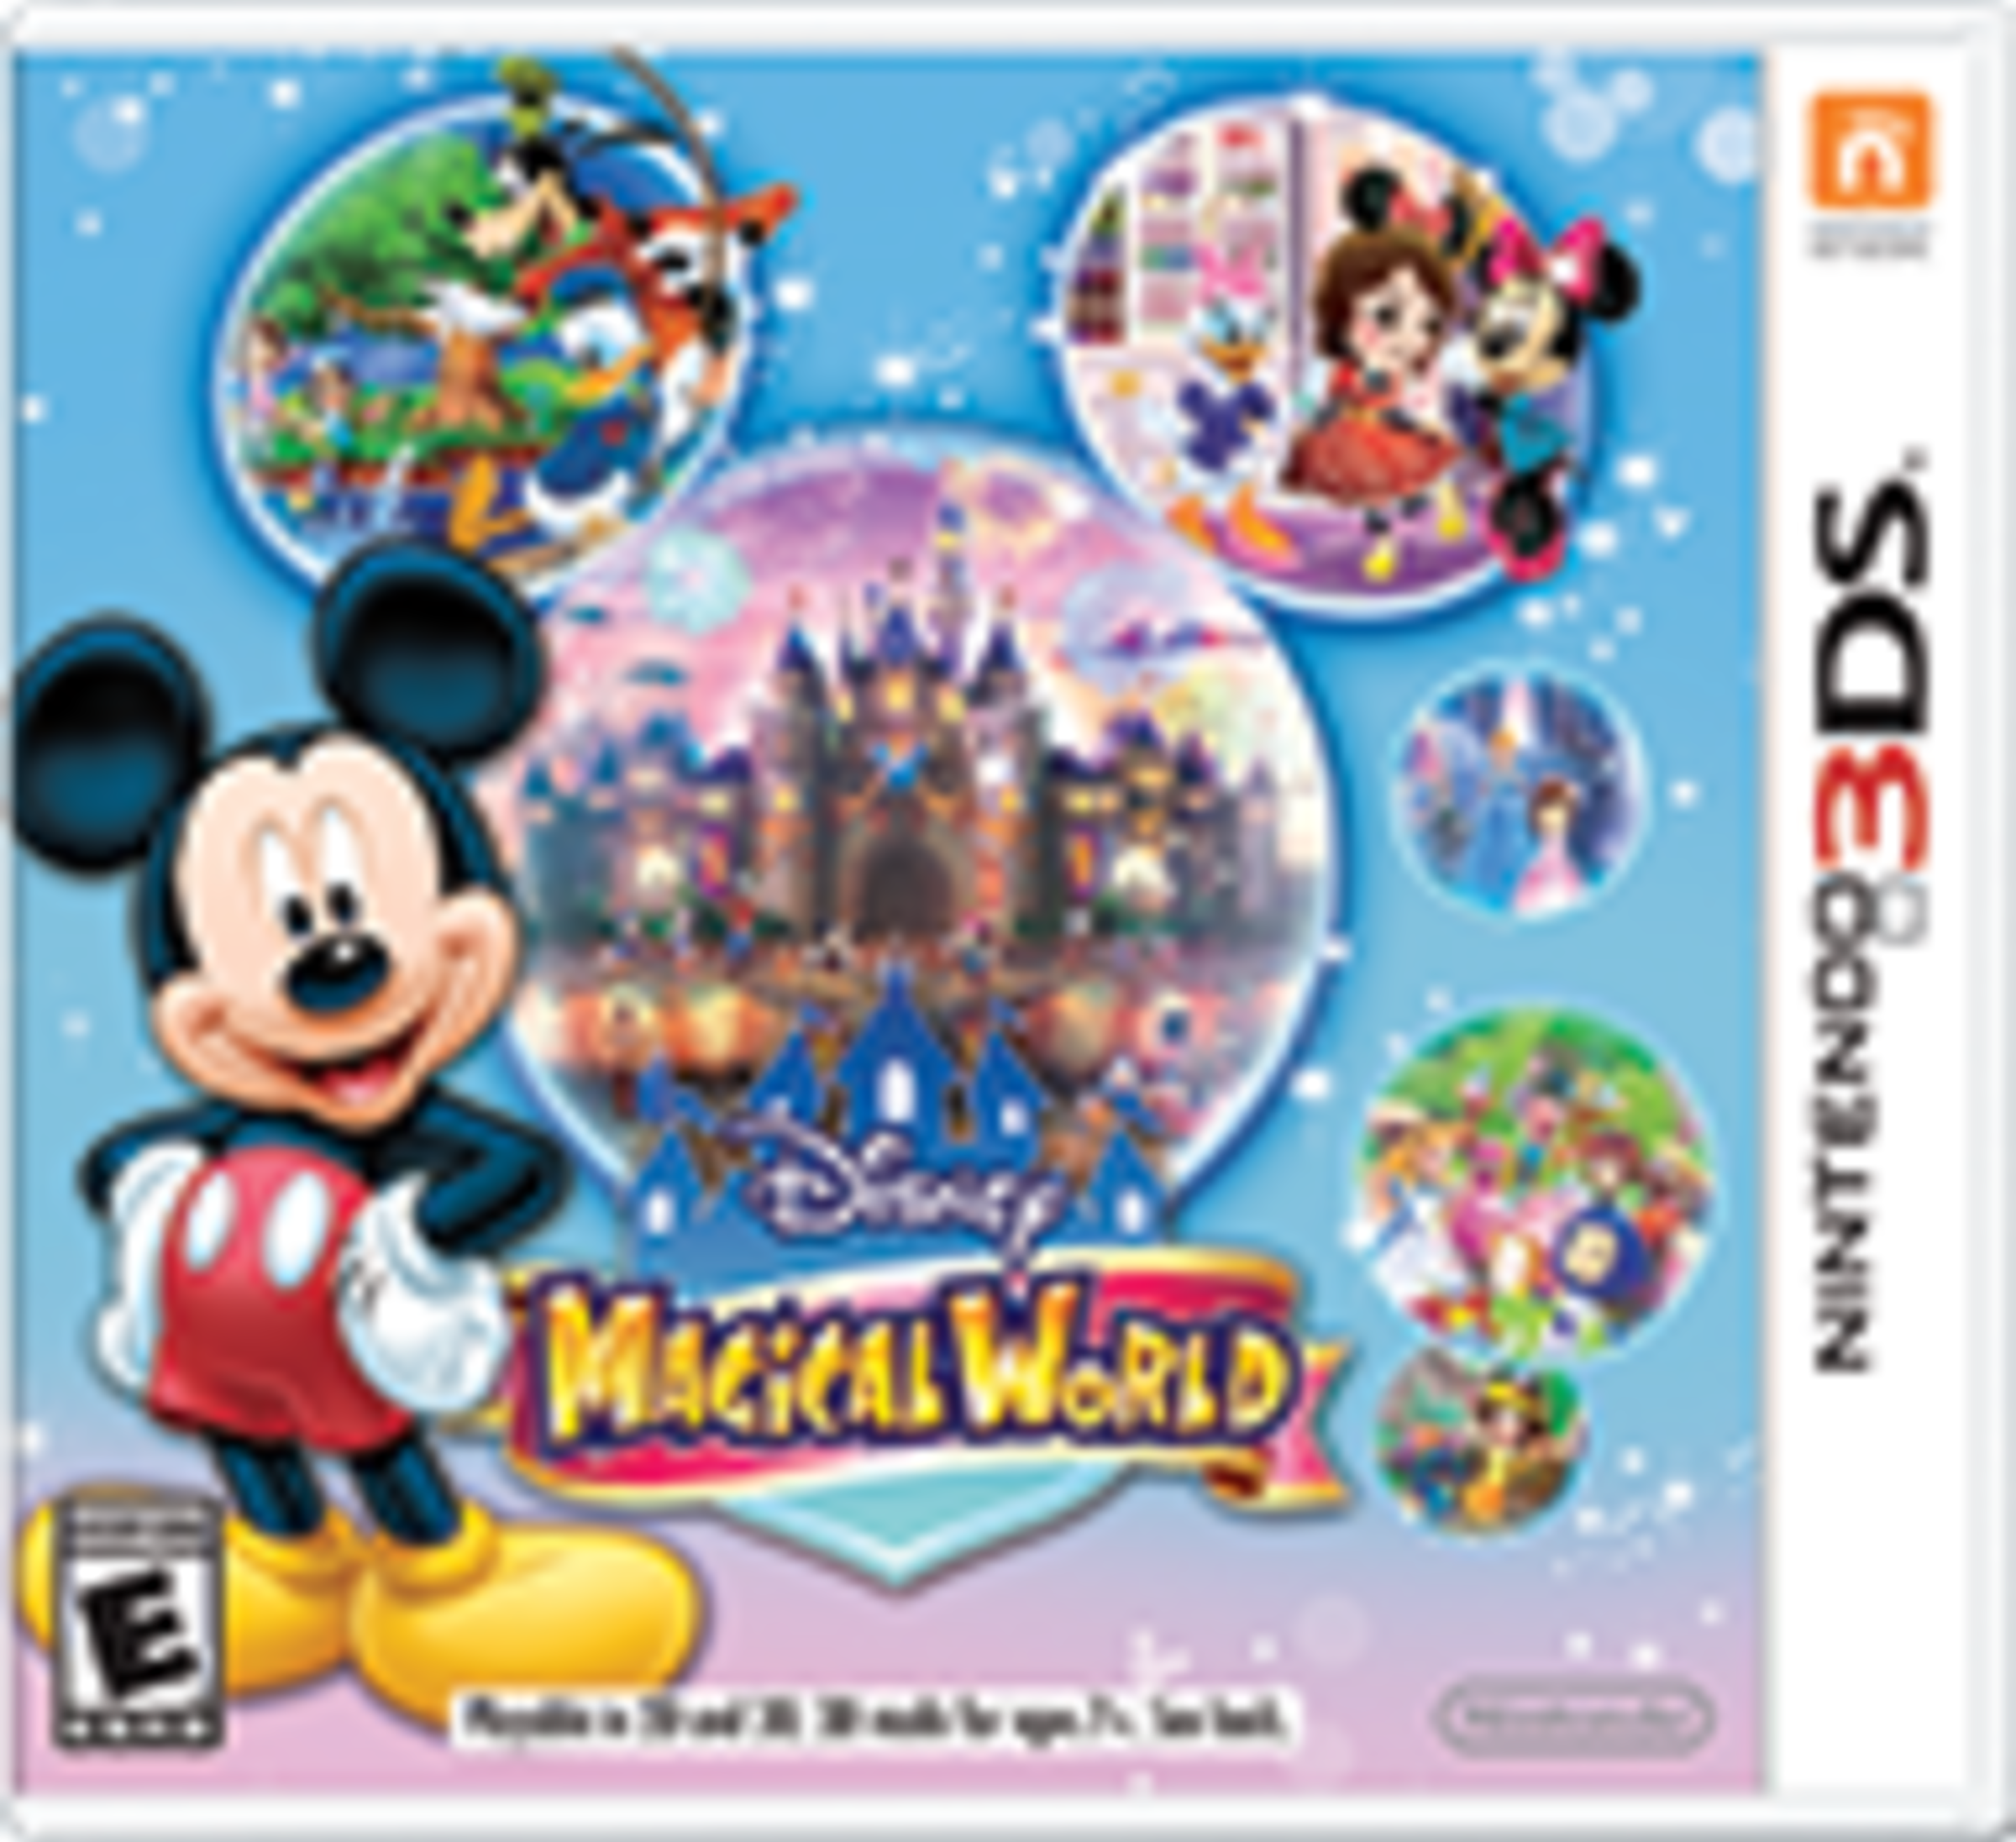 Disney Magical World for Nintendo 3DS - Nintendo Official Site